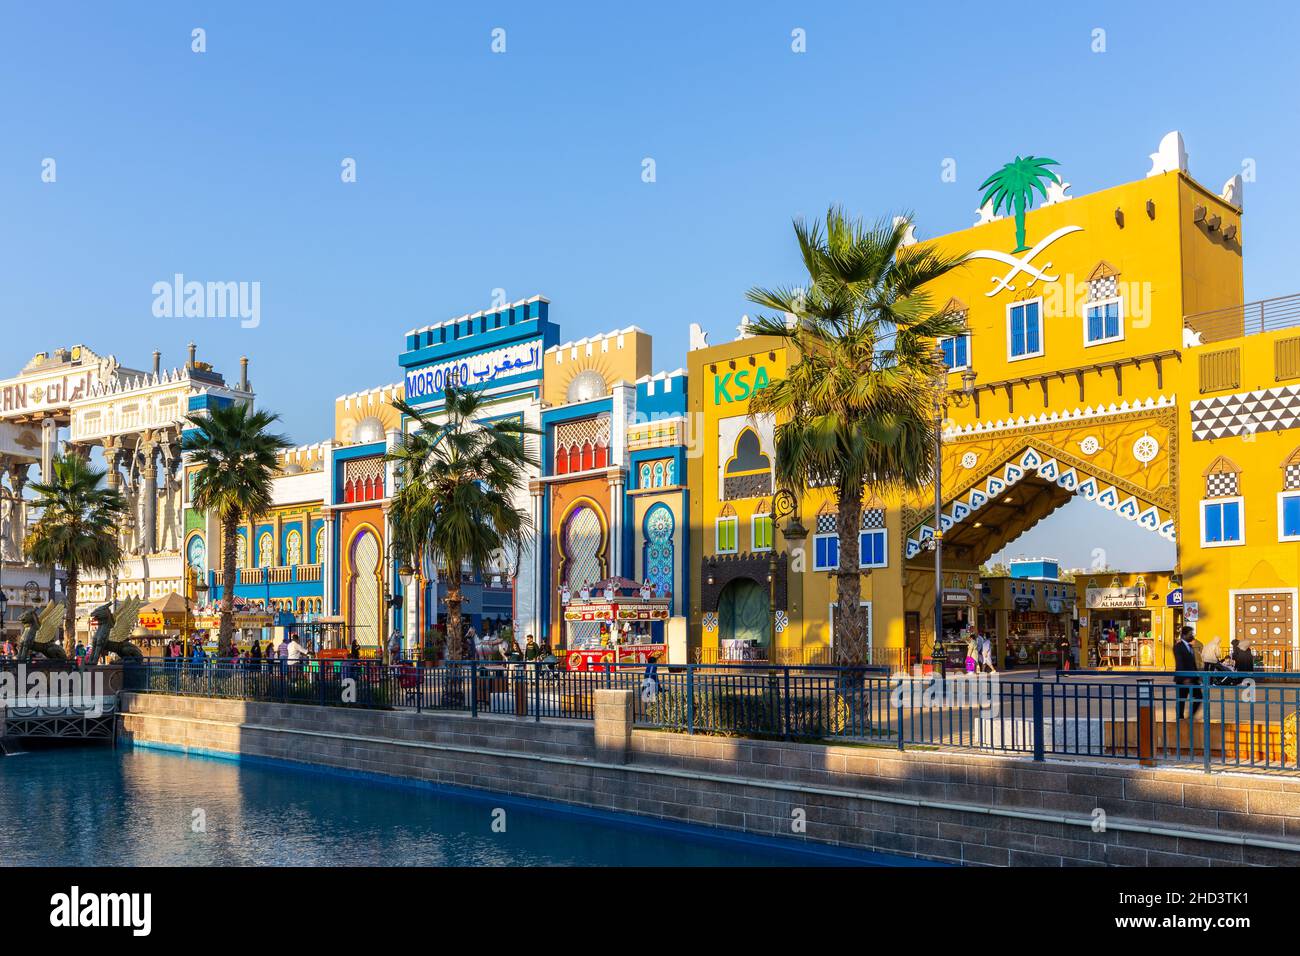 Dubaï, Émirats arabes Unis, 10.01.21.Pavillon coloré dans le parc d'attractions Global Village à Dubaï, Royaume d'Arabie Saoudite (KSA), Maroc et Iran Pavilions Banque D'Images